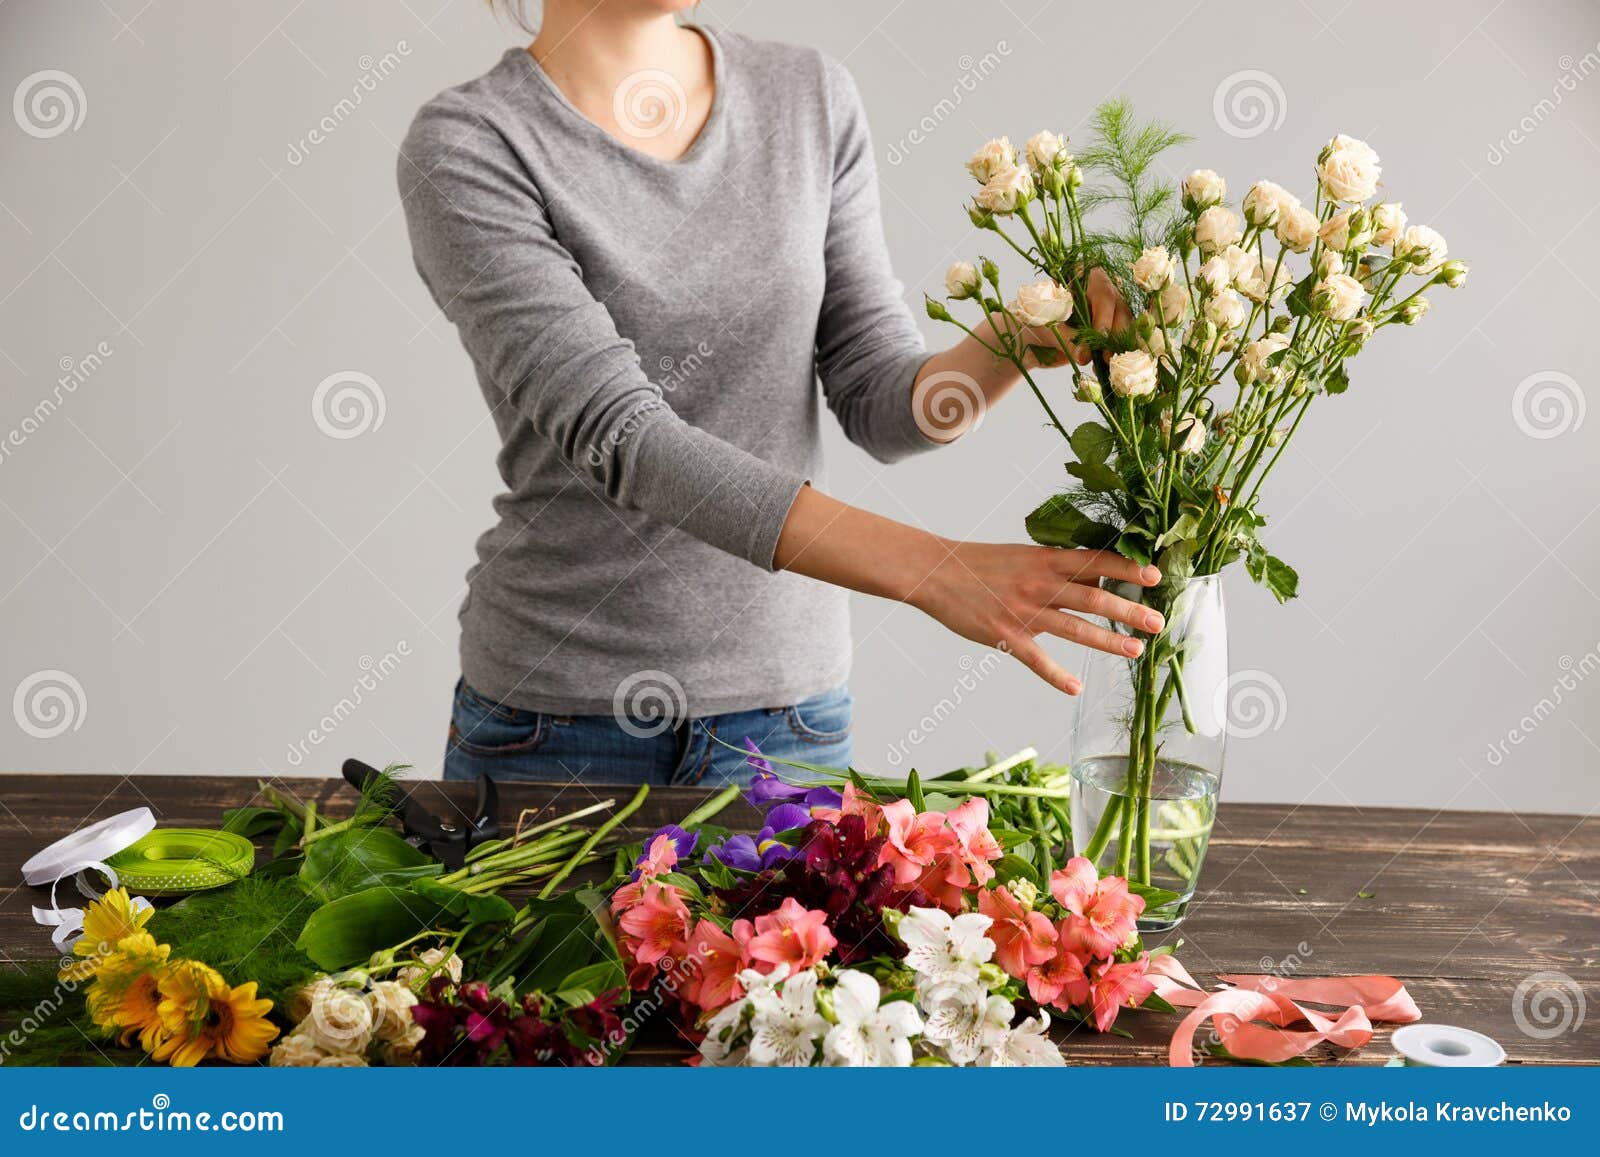 Цветы ставить в холодную или теплую. Срезанные цветы. Девушка с цветами в вазе. Сбор букета. Букет девушка флорист.